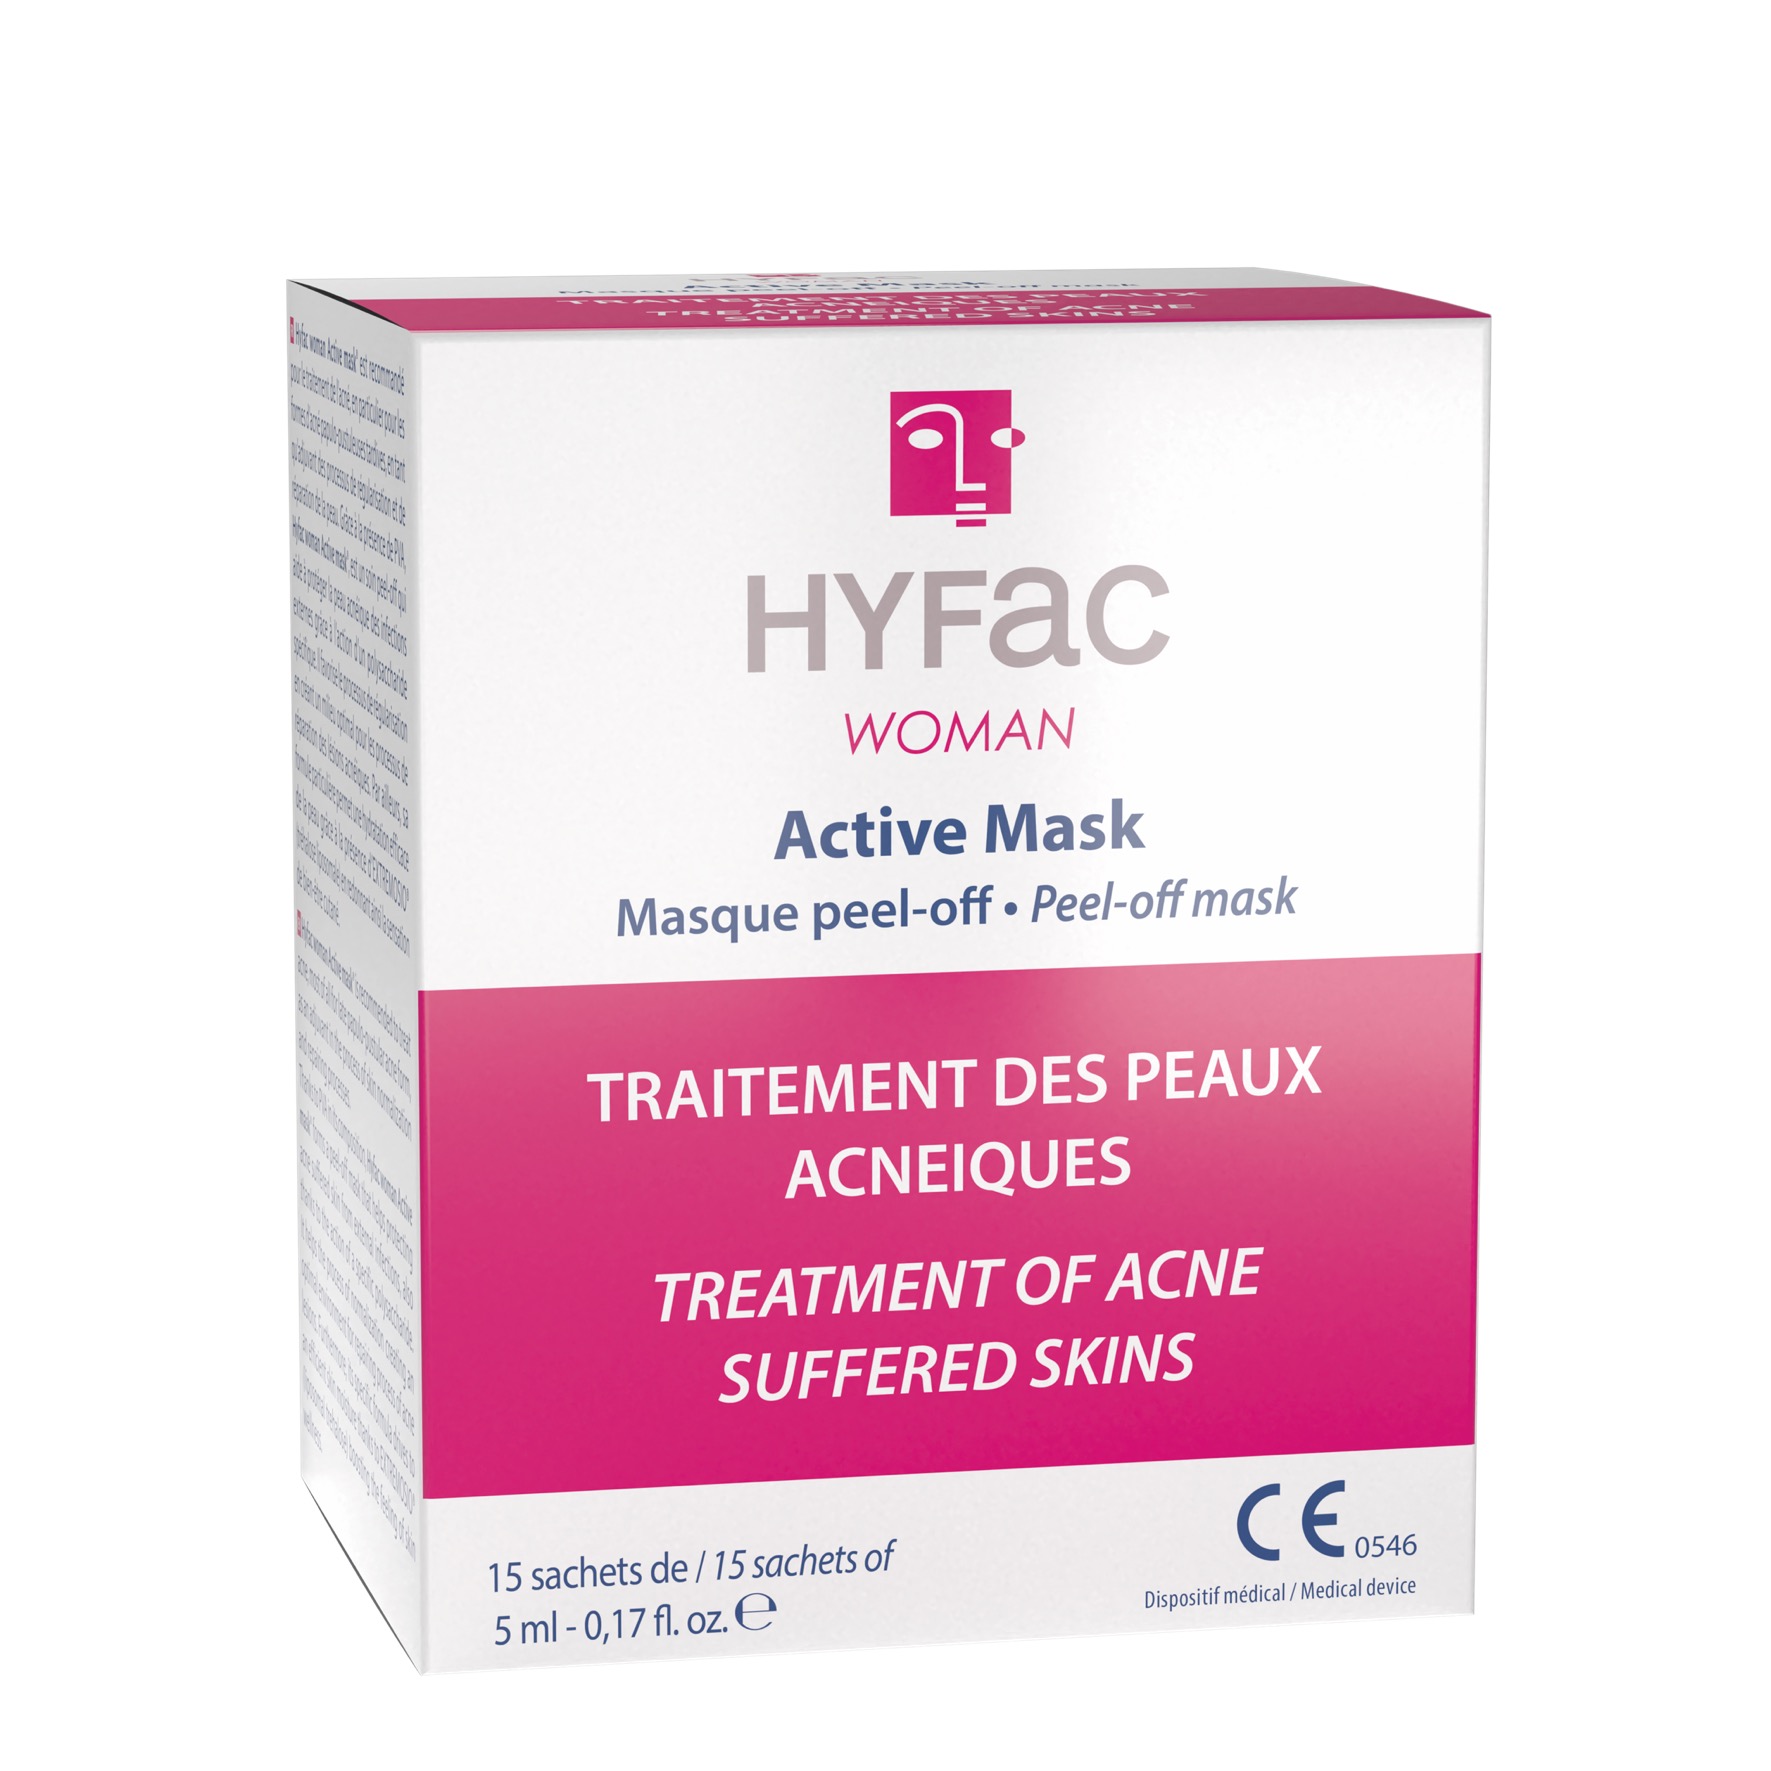 HYFAC WOMAN Active Mask traitement acné femme adulte